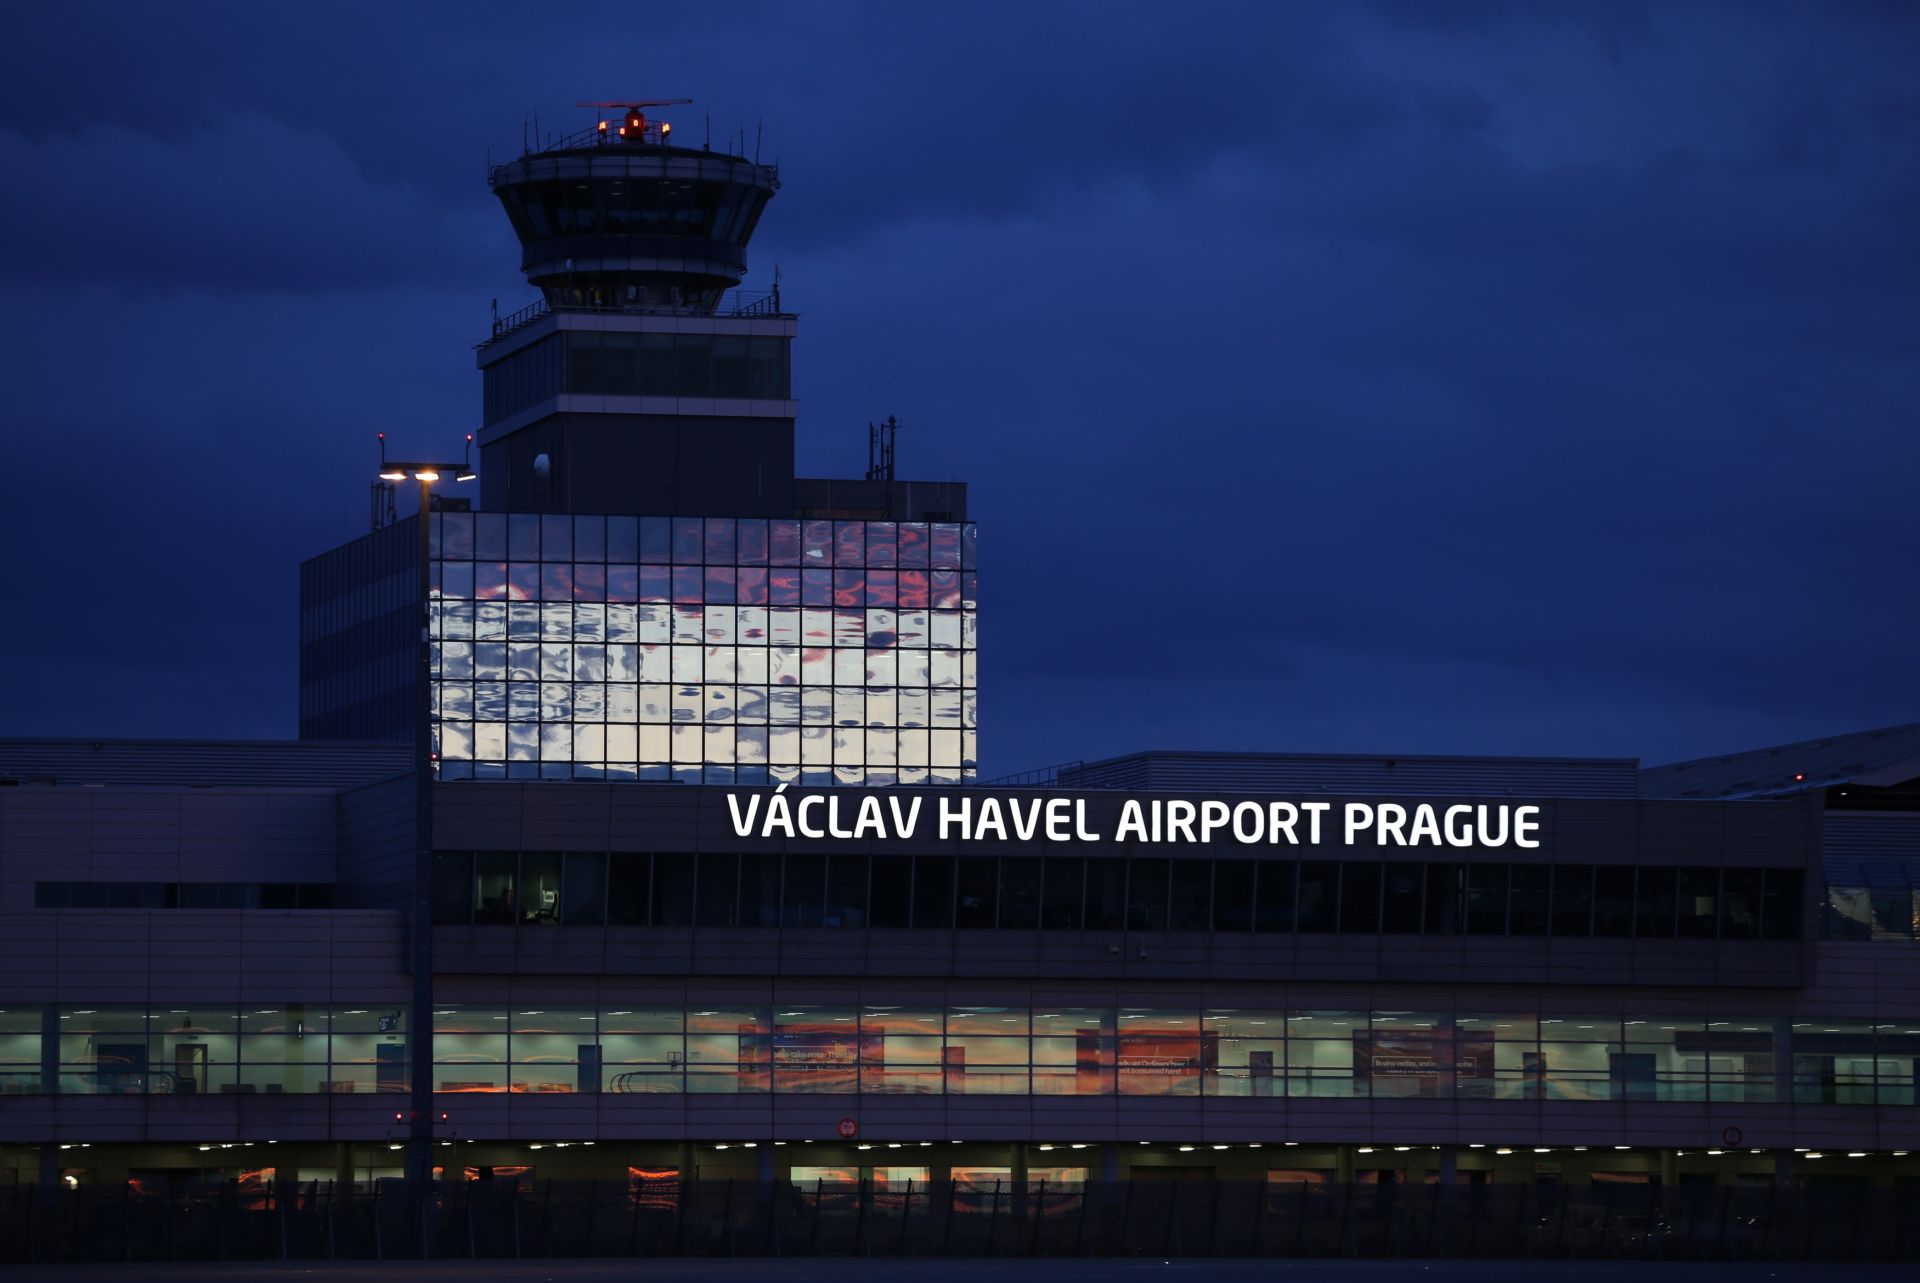 Пражский аэропорт вошёл в десятку лучших в Европе по оценкам пользователей Google